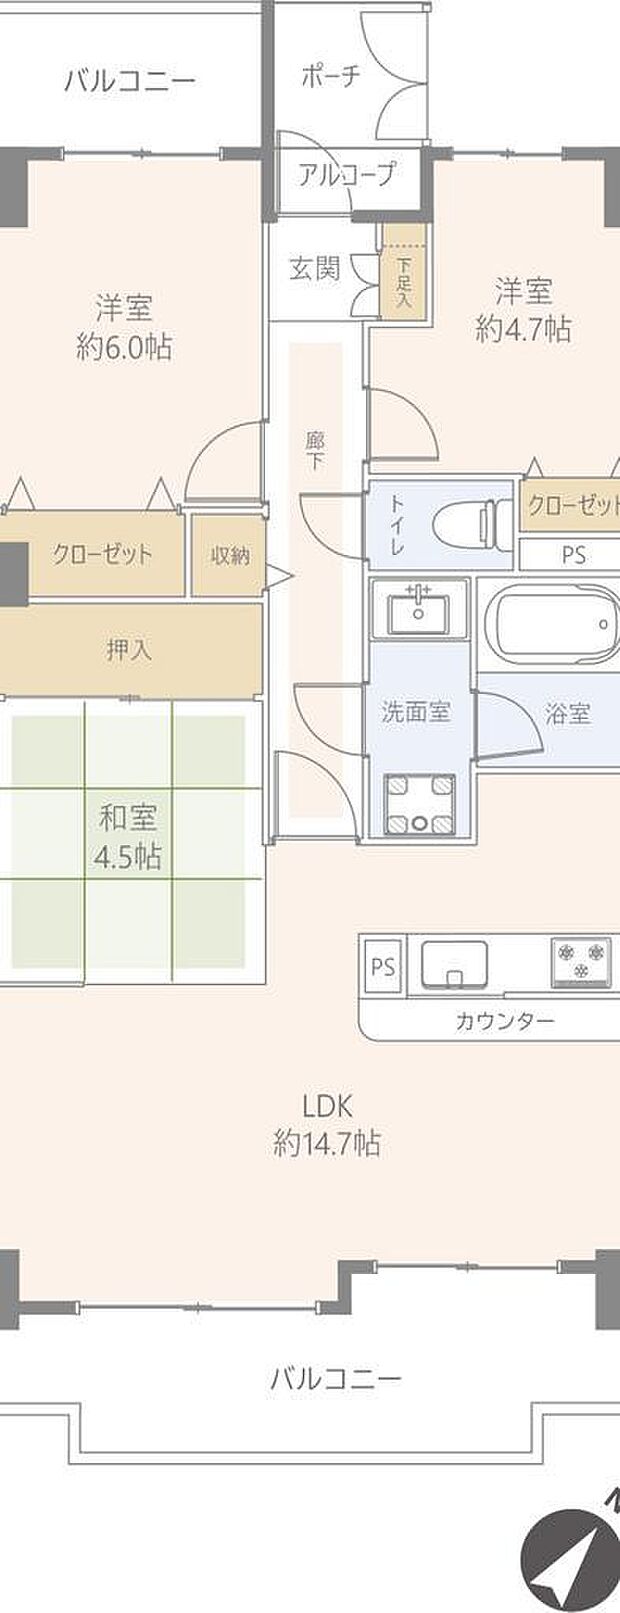 与野パークスクエア(3LDK) 9階/902の間取り図